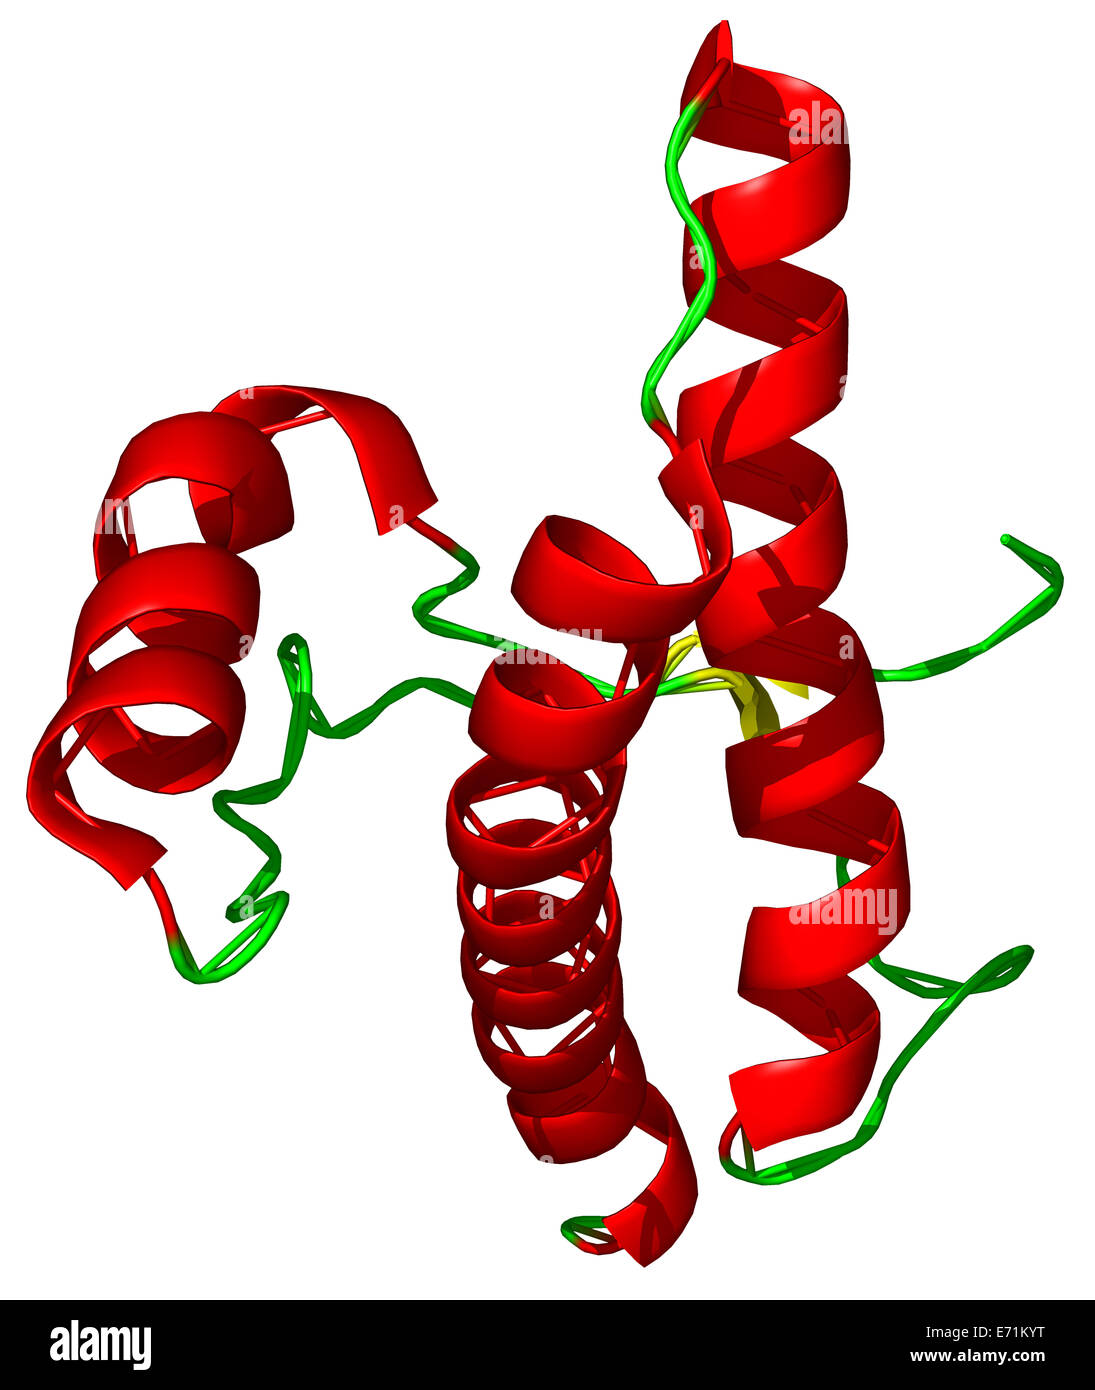 Das Prion-Protein (PrP) ist eine Zelle Oberfläche Glykoprotein. Die Haftung Prion-Krankheiten gehören natürlich Creutzfeldt - Jakob-Krankheit Stockfoto